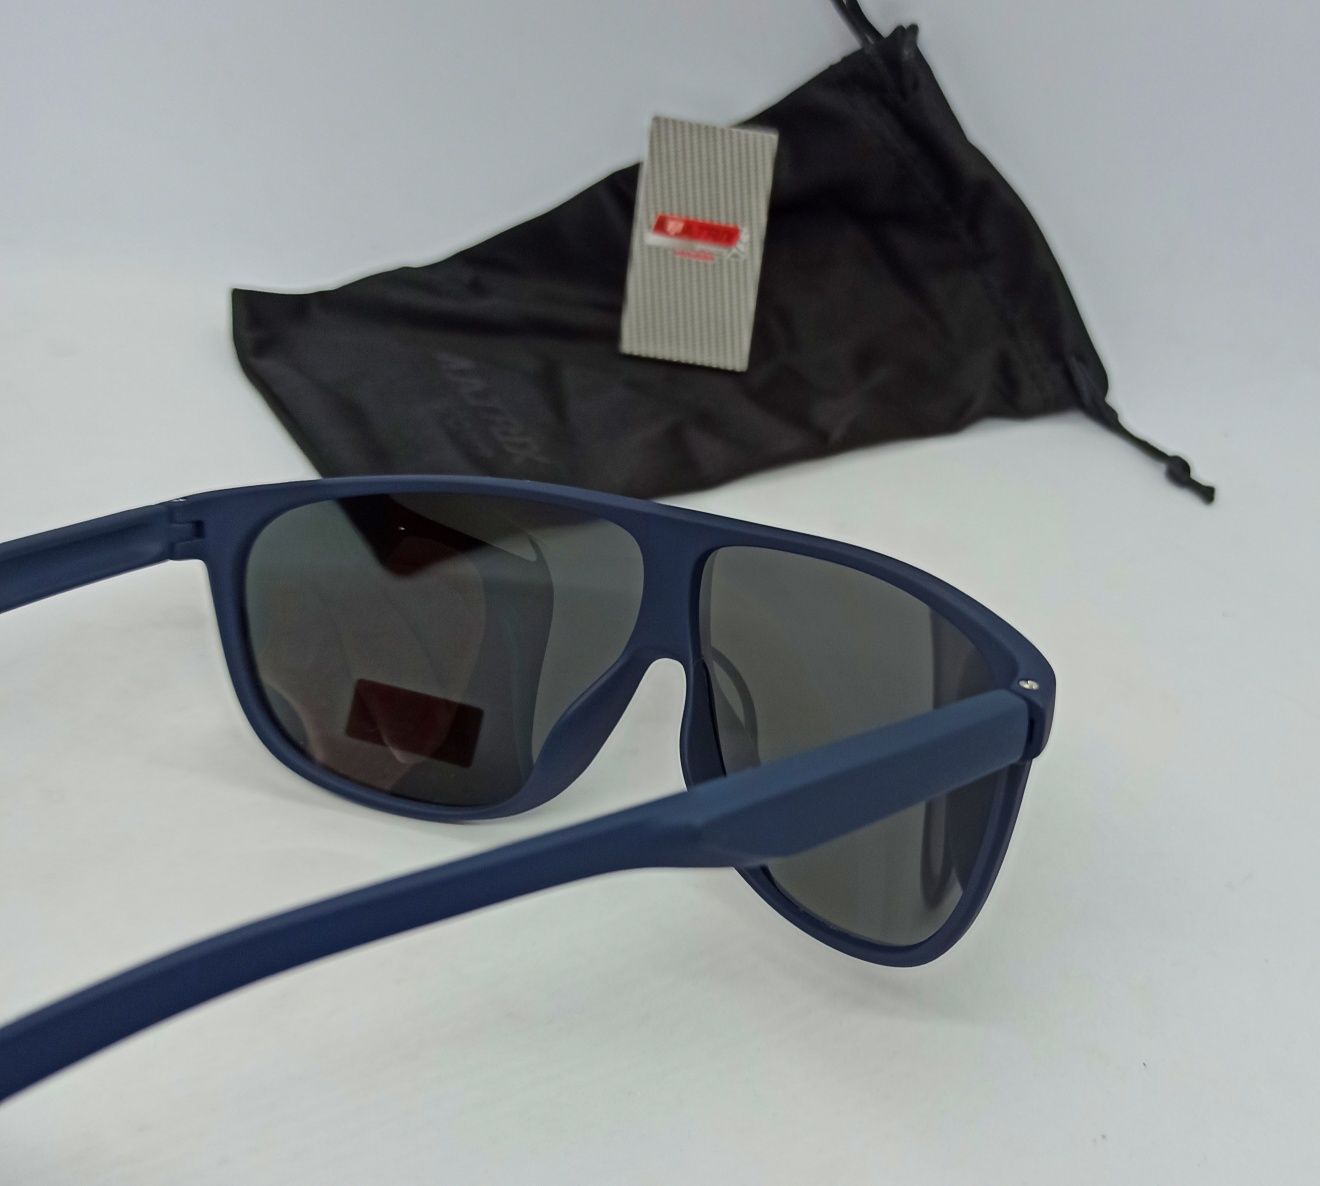 Matrix MX 027 очки мужские солнцезащитные в синей матовой оправе поляр